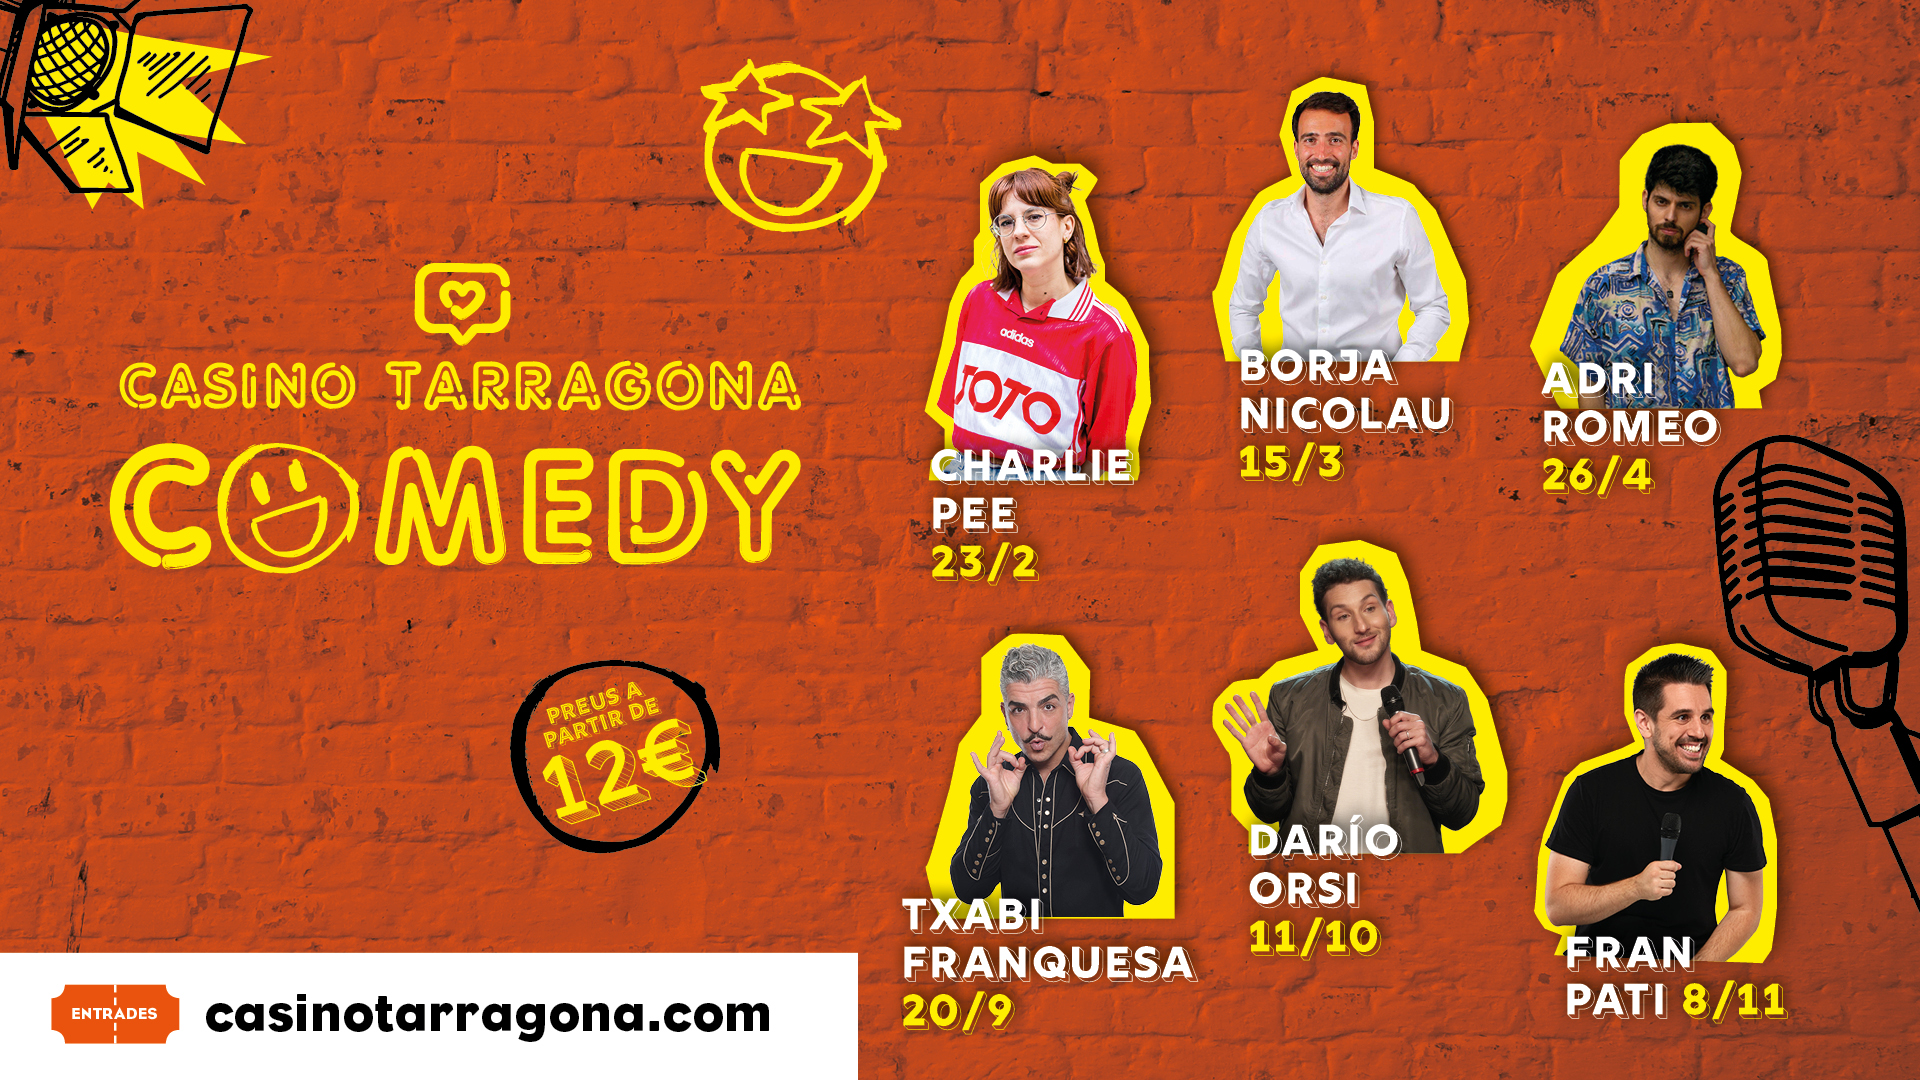 Charlie Pee, Borja Nicolau y Adri Romeo los protagonistas de la primera etapa del ciclo de monólogos Casino Tarragona Comedy